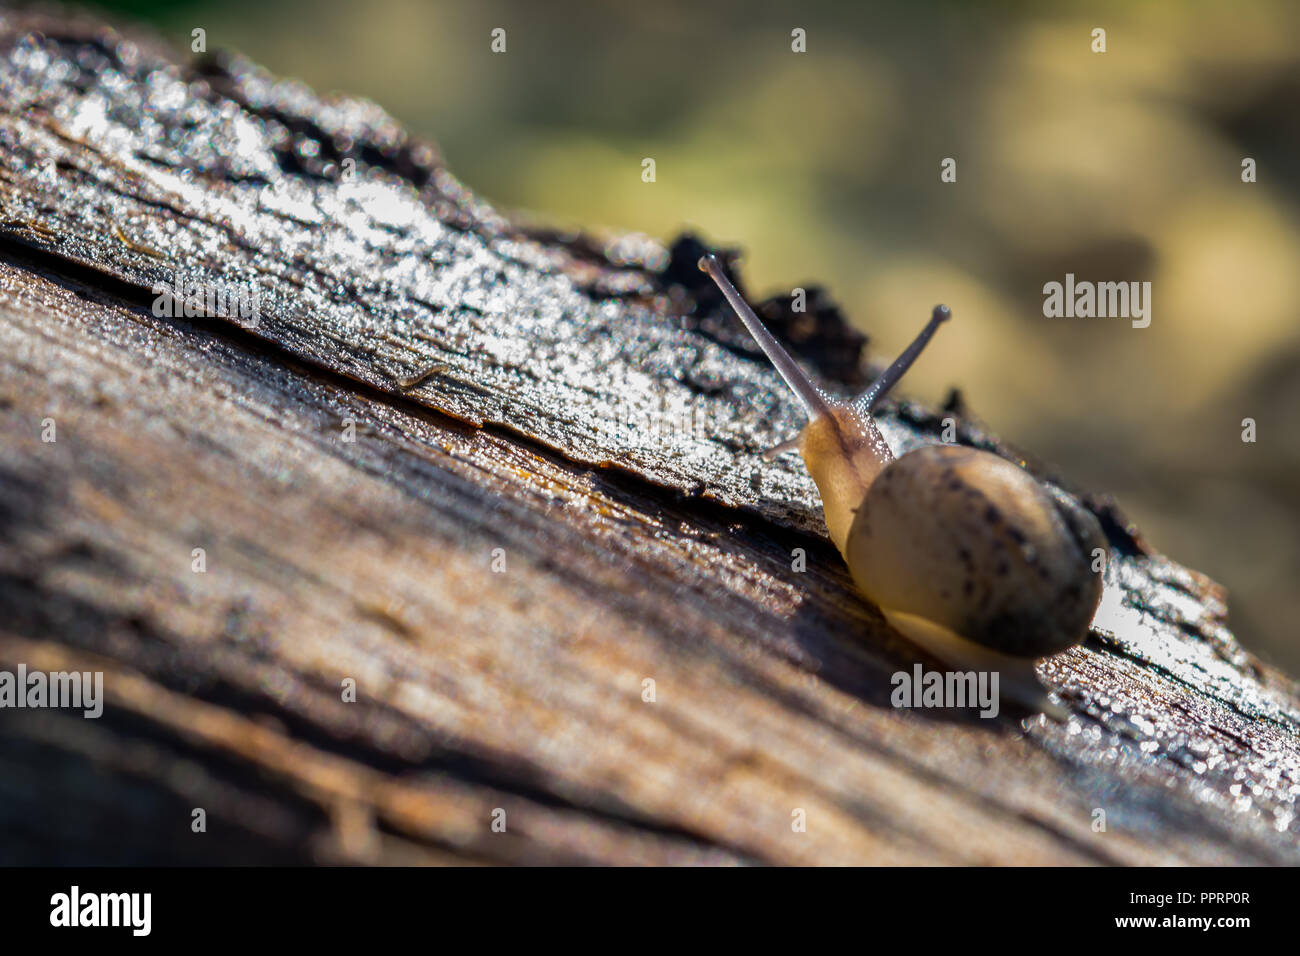 Ein Land snail Wandern auf einem Baumstamm, Schleim hinter sich. Körper halb durchsichtig durch Sonne beleuchtet, Schnecke Auge Tentakel, gelb braun Shell, Weg suchen Stockfoto